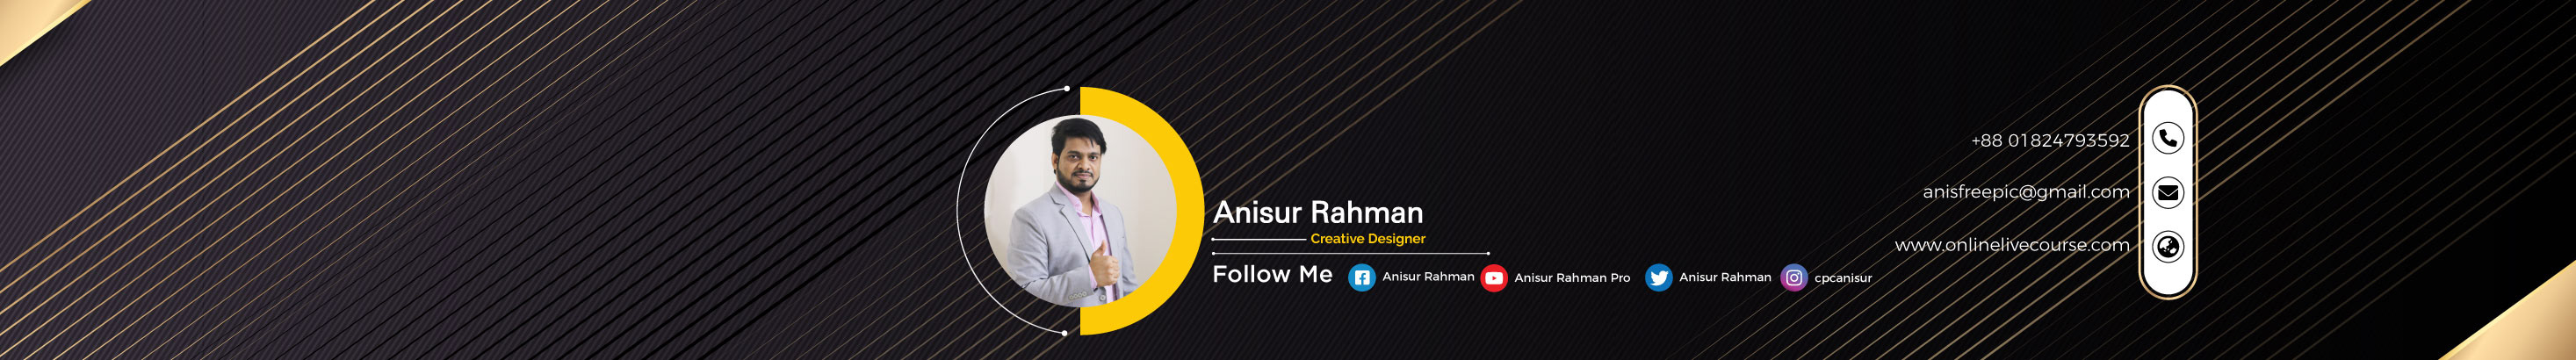 Profil-Banner von Anisur Rahman